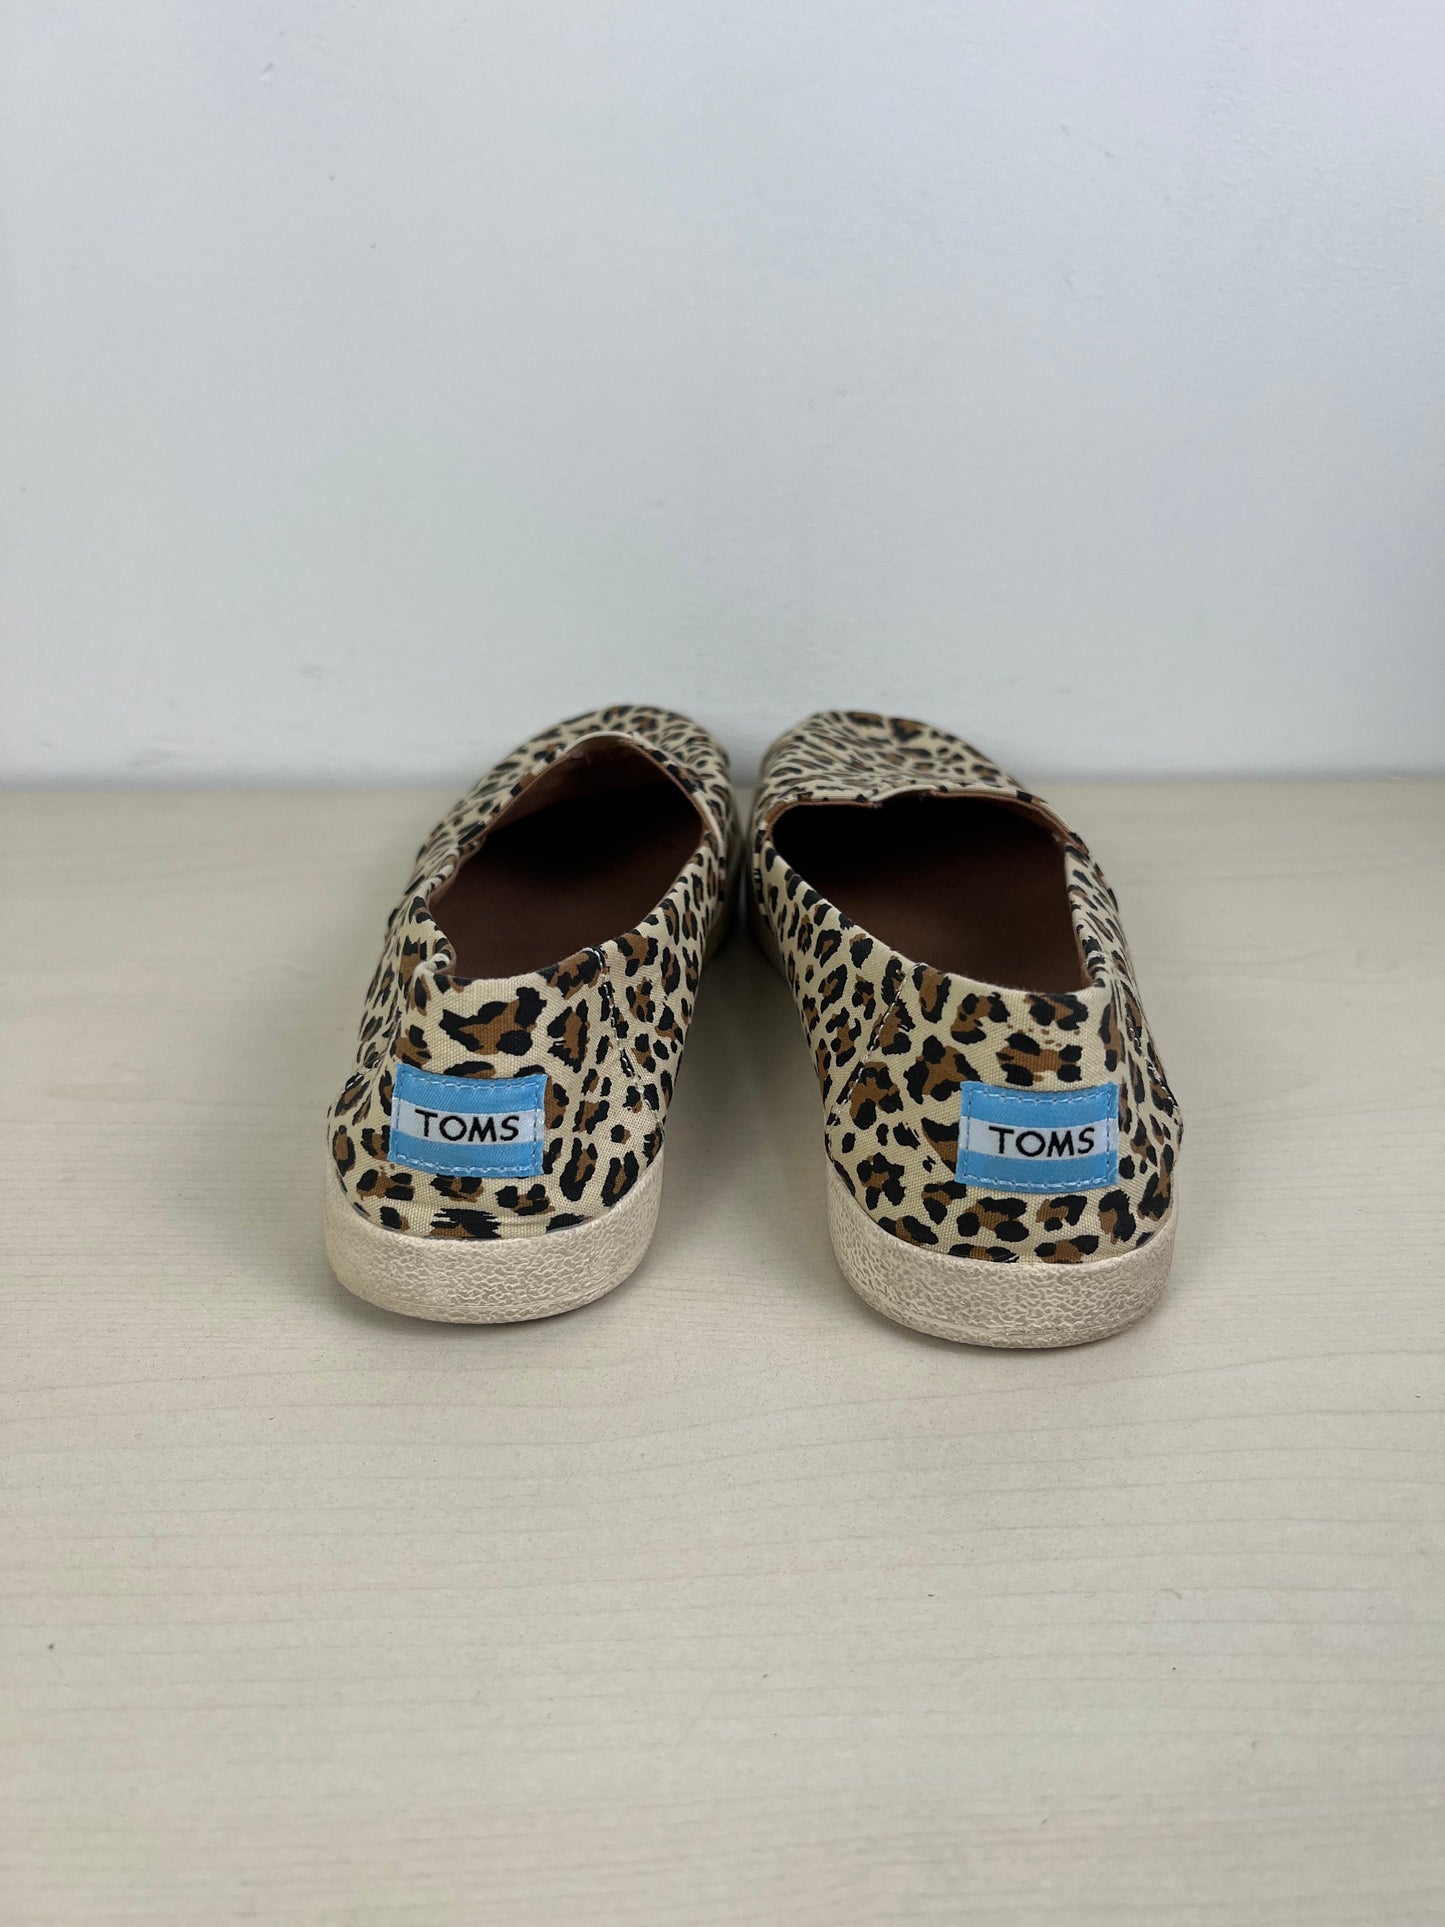 Leopard Print Shoes Flats Toms, Size 8.5